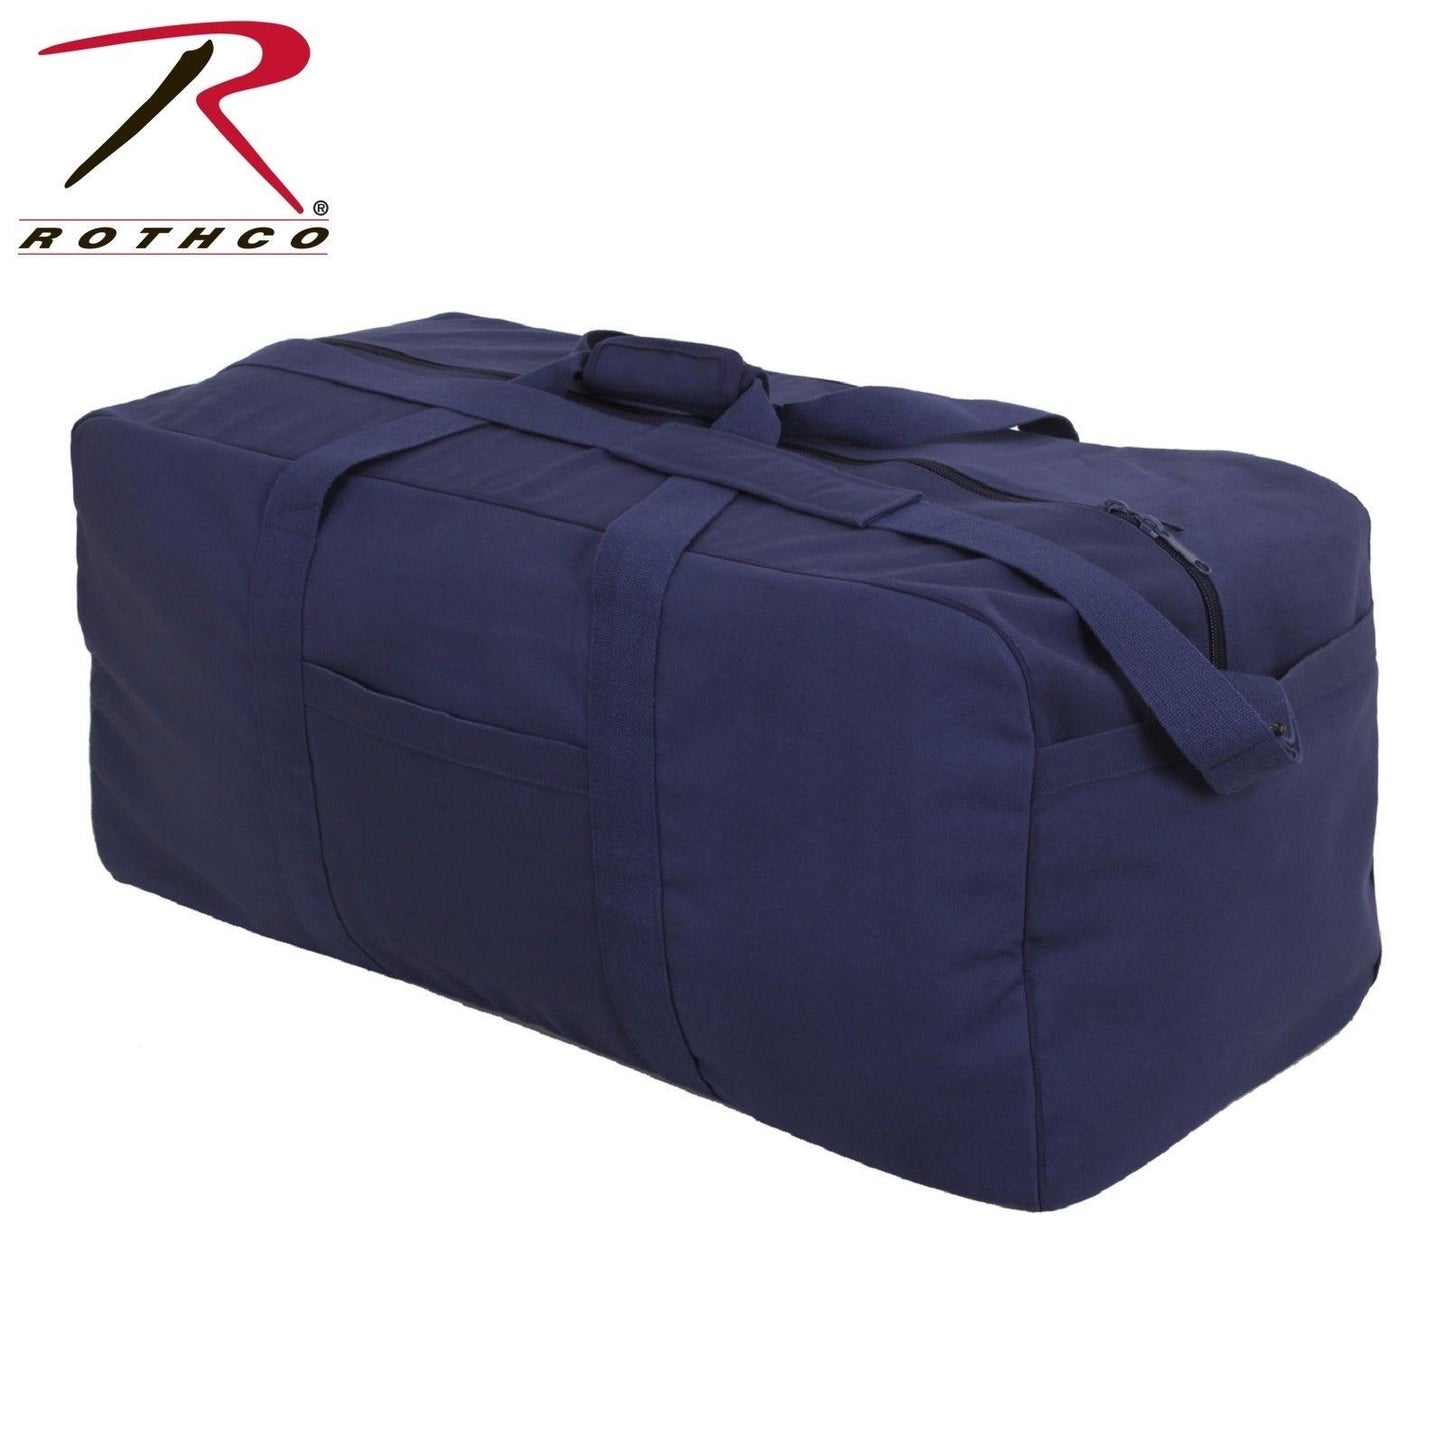 Rothco Canvas Jumbo Cargo Bag - Navy Blue Travel Bag Luggage Bag Jumbo Duffle